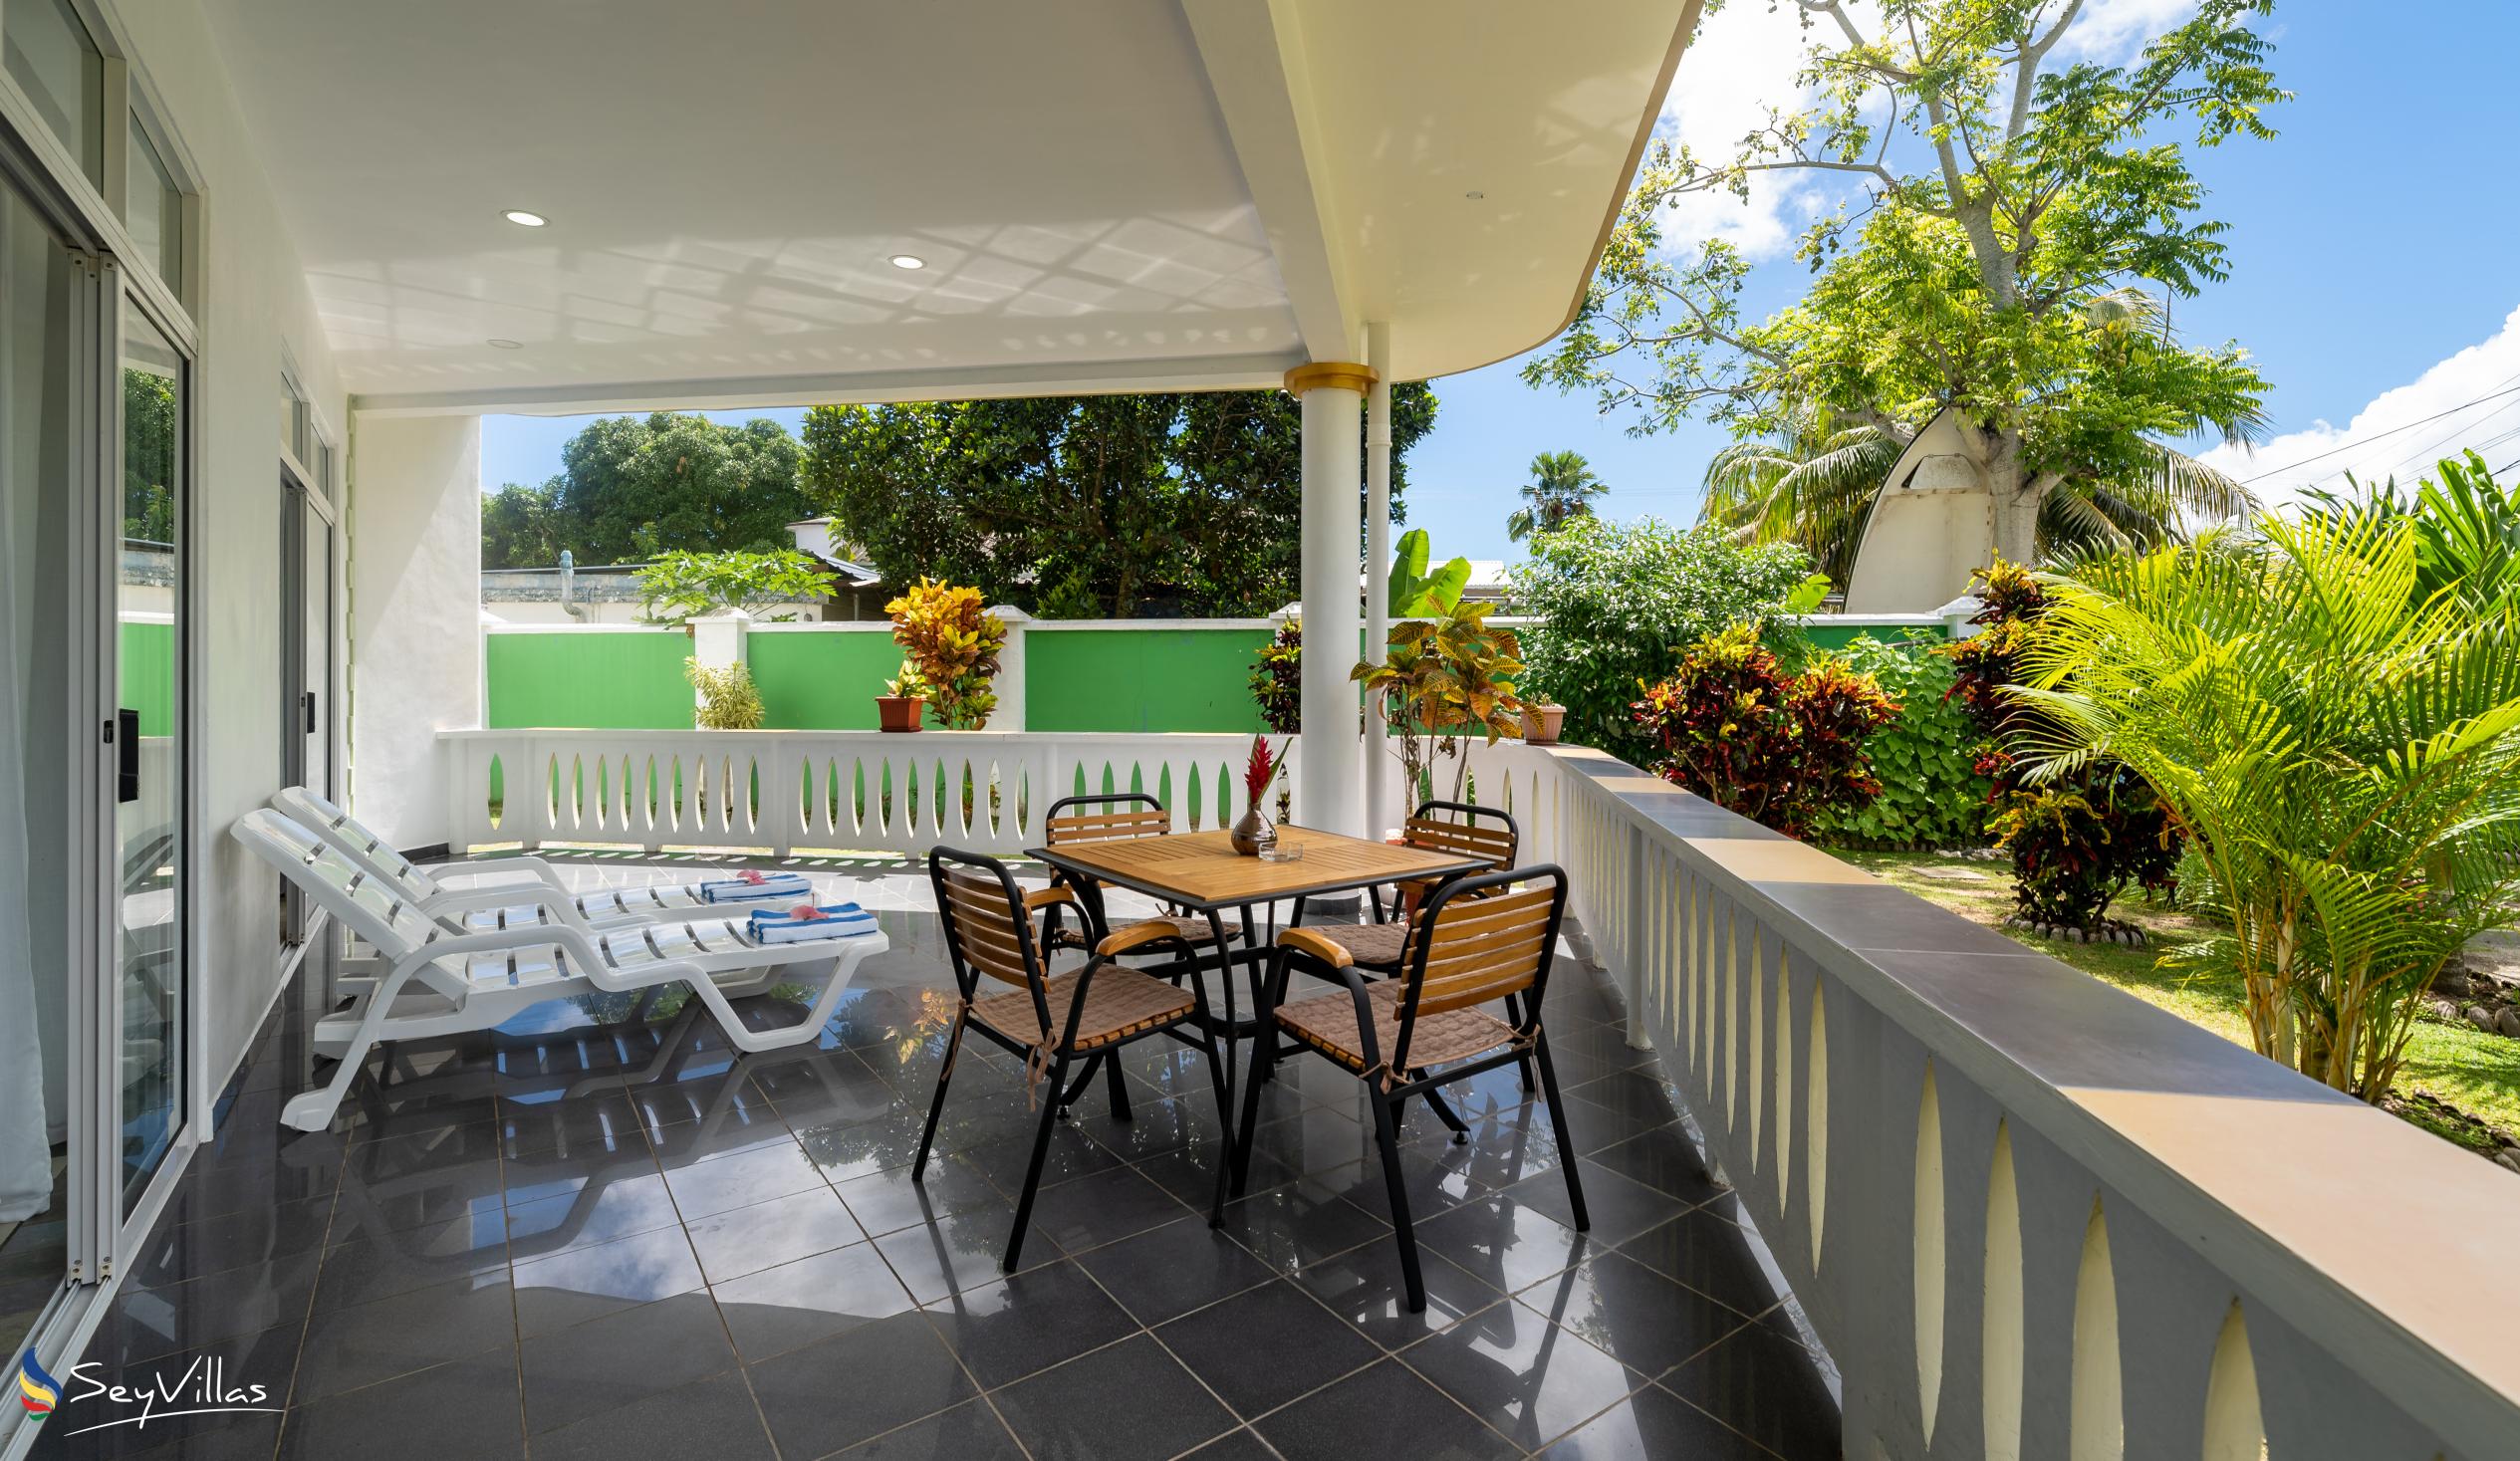 Foto 48: 340 Degrees Mountain View Apartments - Appartement avec vue sur le jardin - 2 Chambres - Mahé (Seychelles)